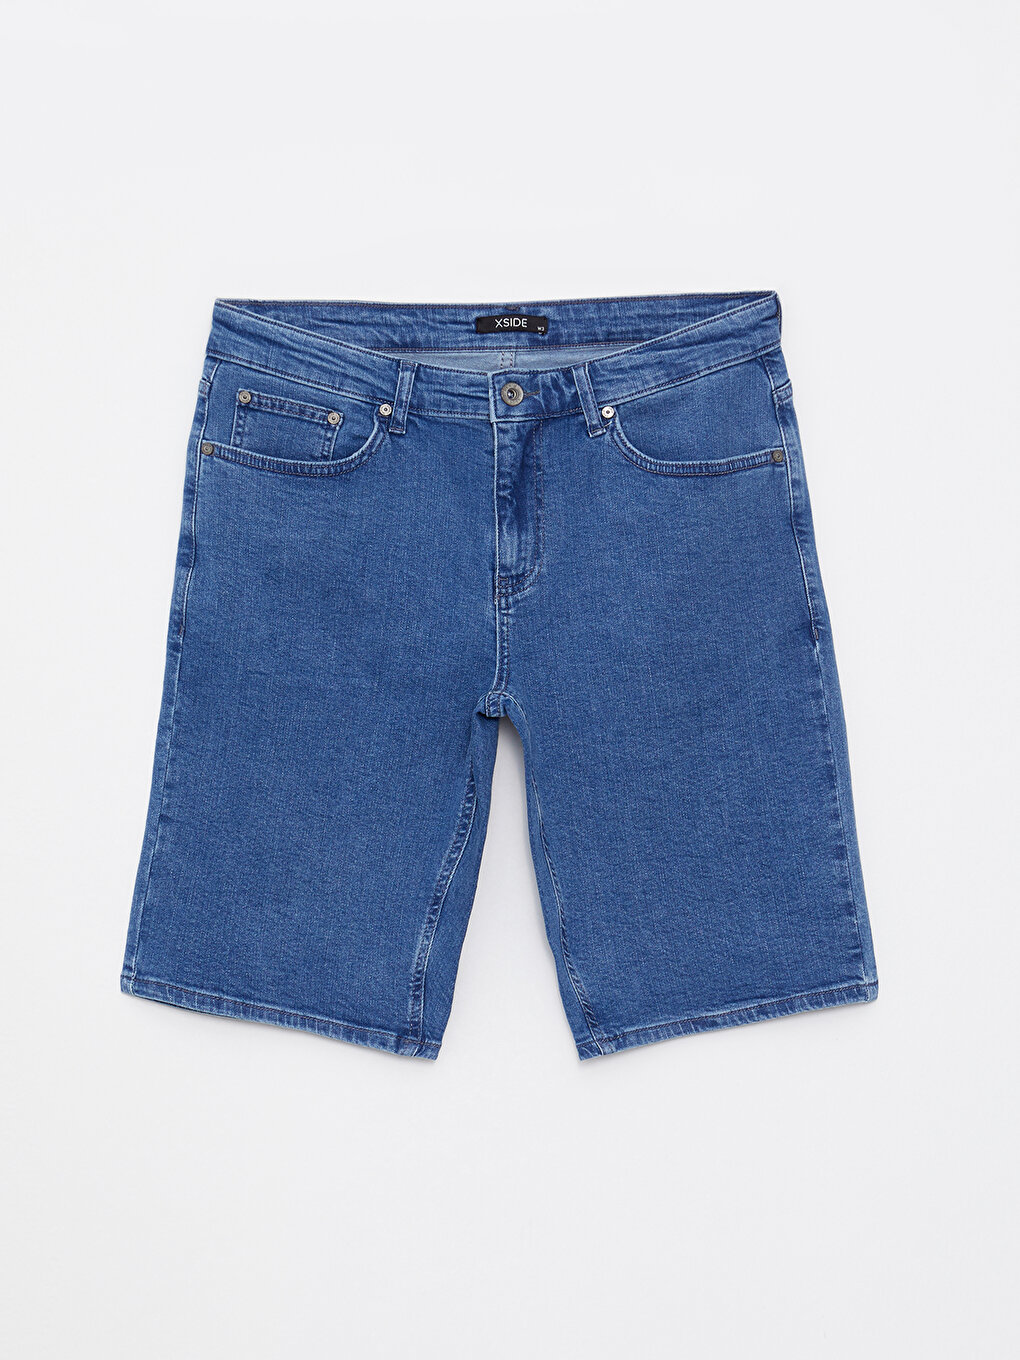 Мужские джинсовые шорты стандартного кроя XSIDE, средний синий